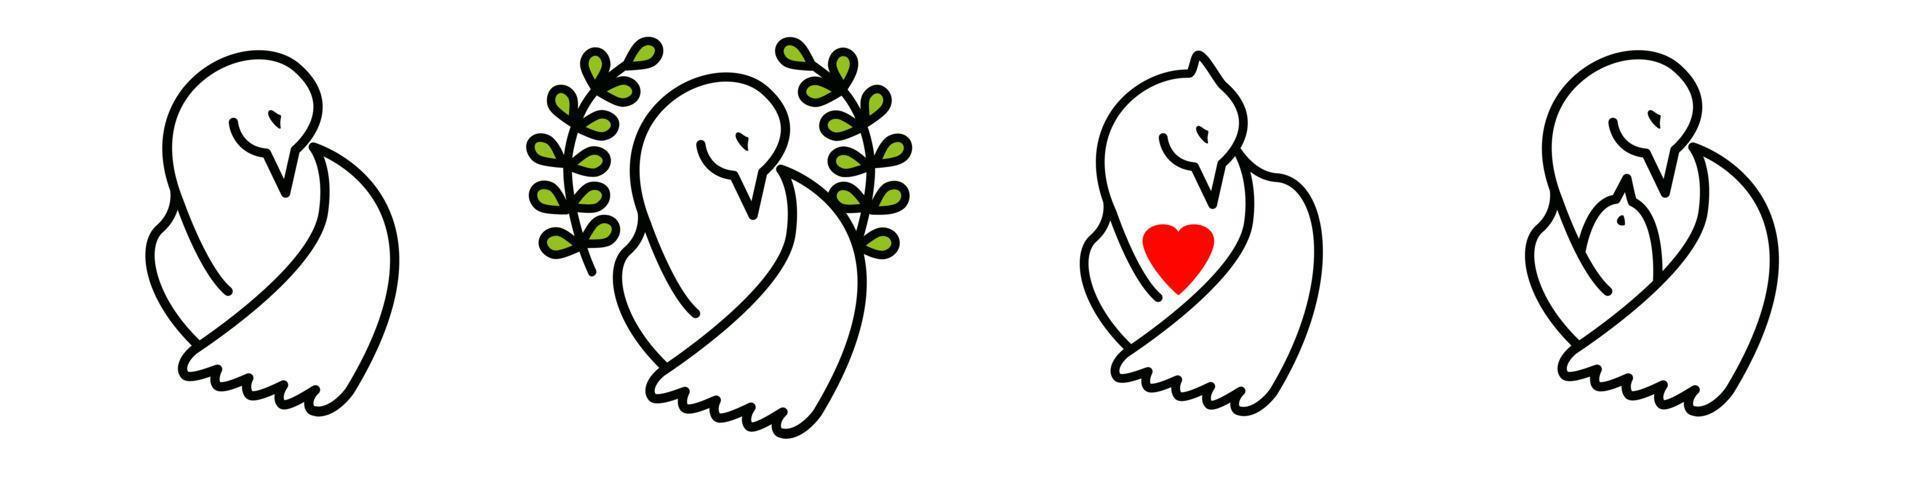 Vektor einstellen von Taube von das Welt, Taube mit ein rot Herz, ein Vogel mit ein Küken. Gruppe von anders Konzepte isoliert auf Weiß Hintergrund. Symbole von Frieden, Gnade, gegenseitig Hilfe, Liebe, Mutterschaft